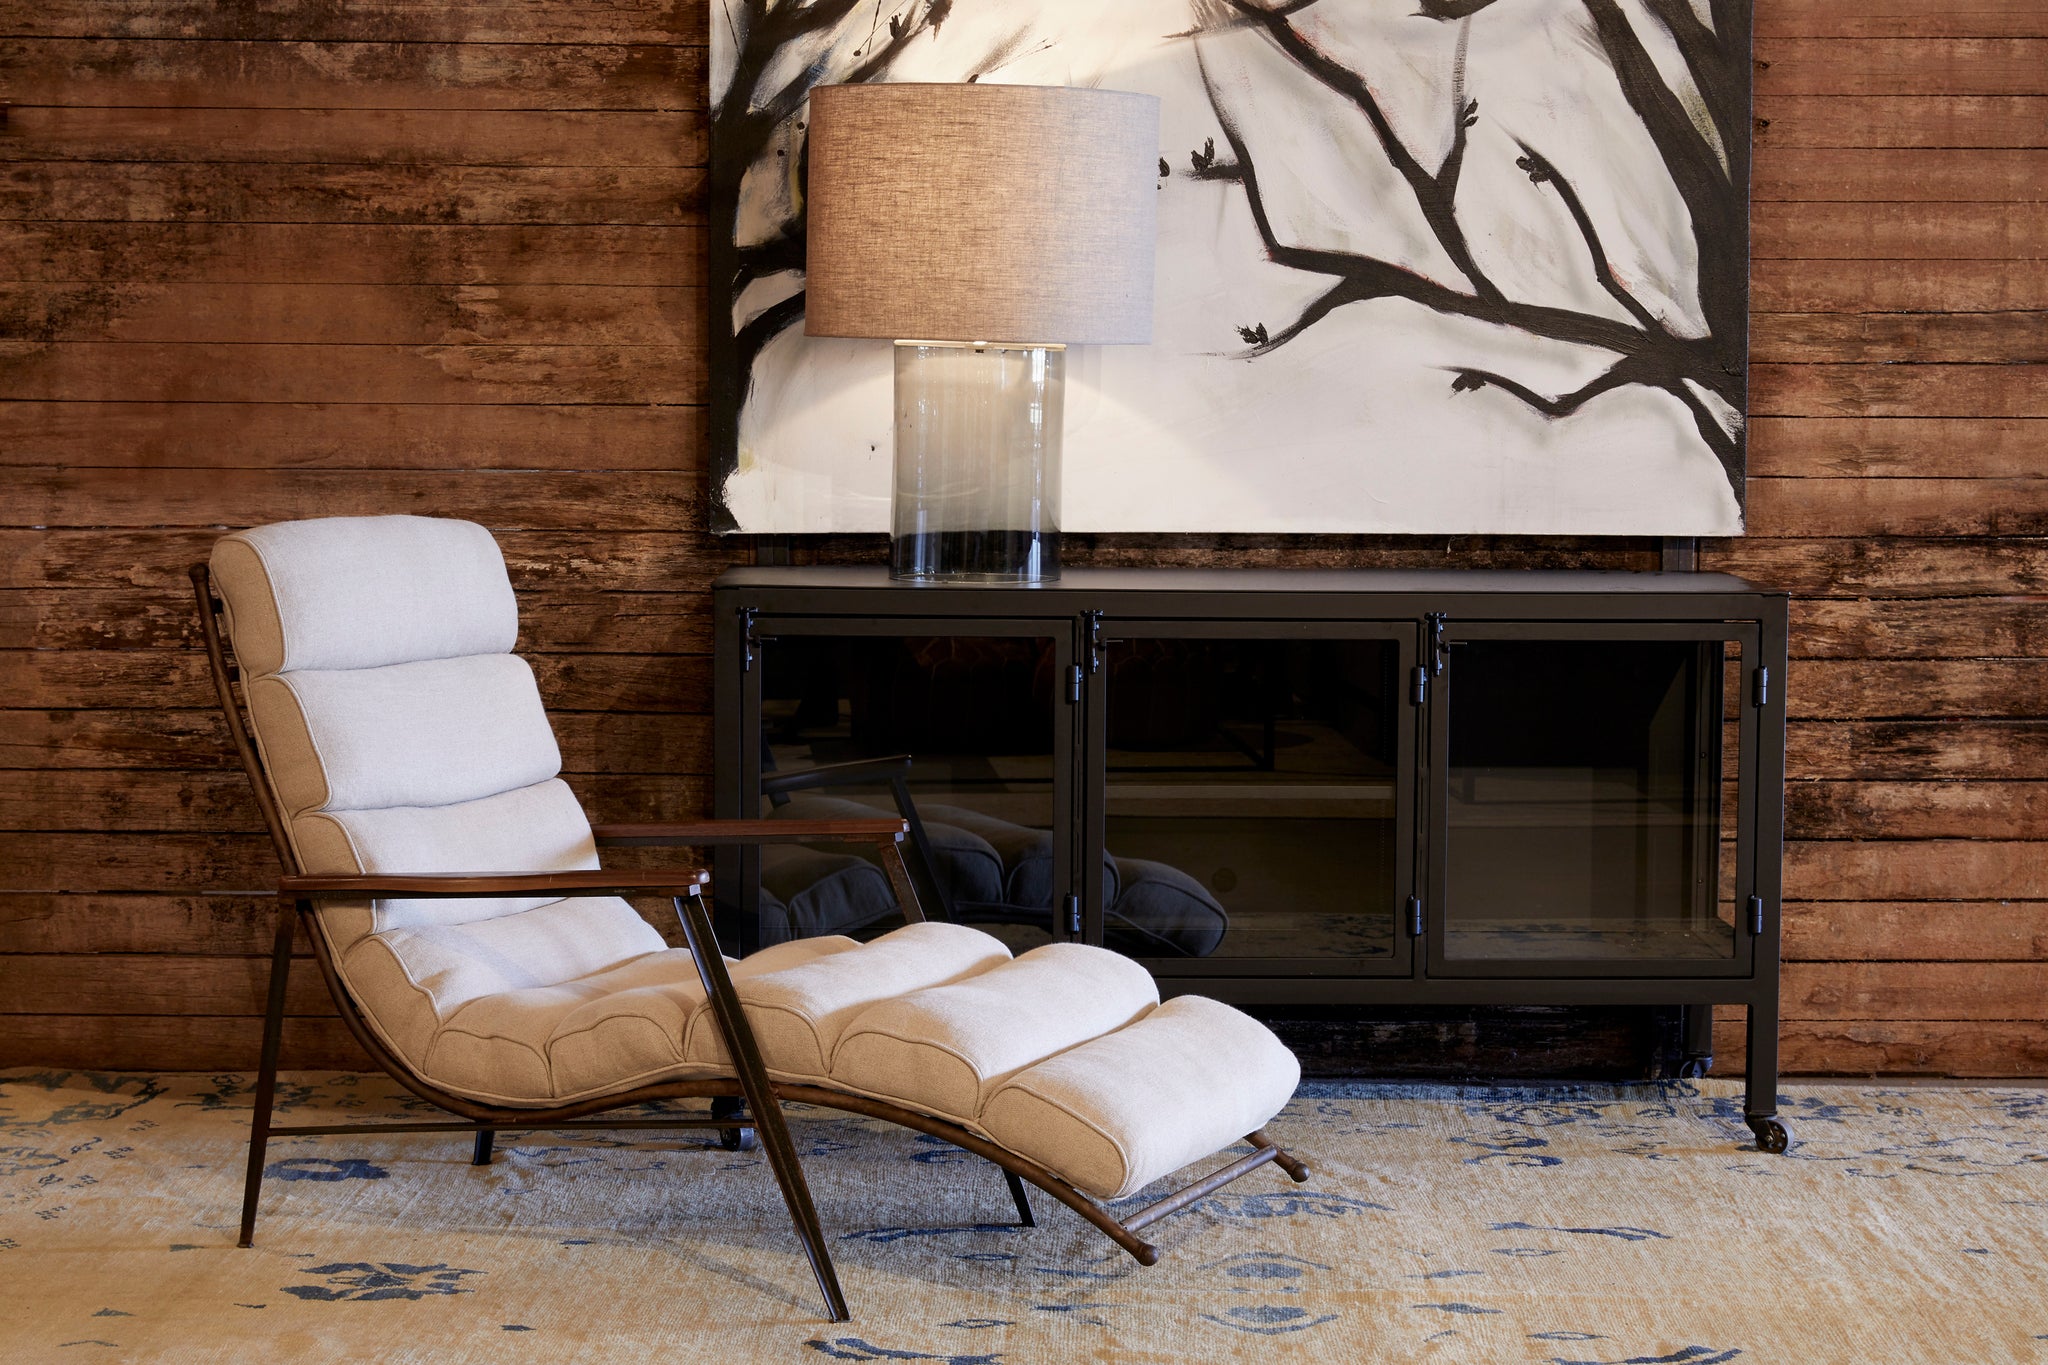  室内有木质墙壁老式地毯和布里瓦德粗麻布的德克兰躺椅 